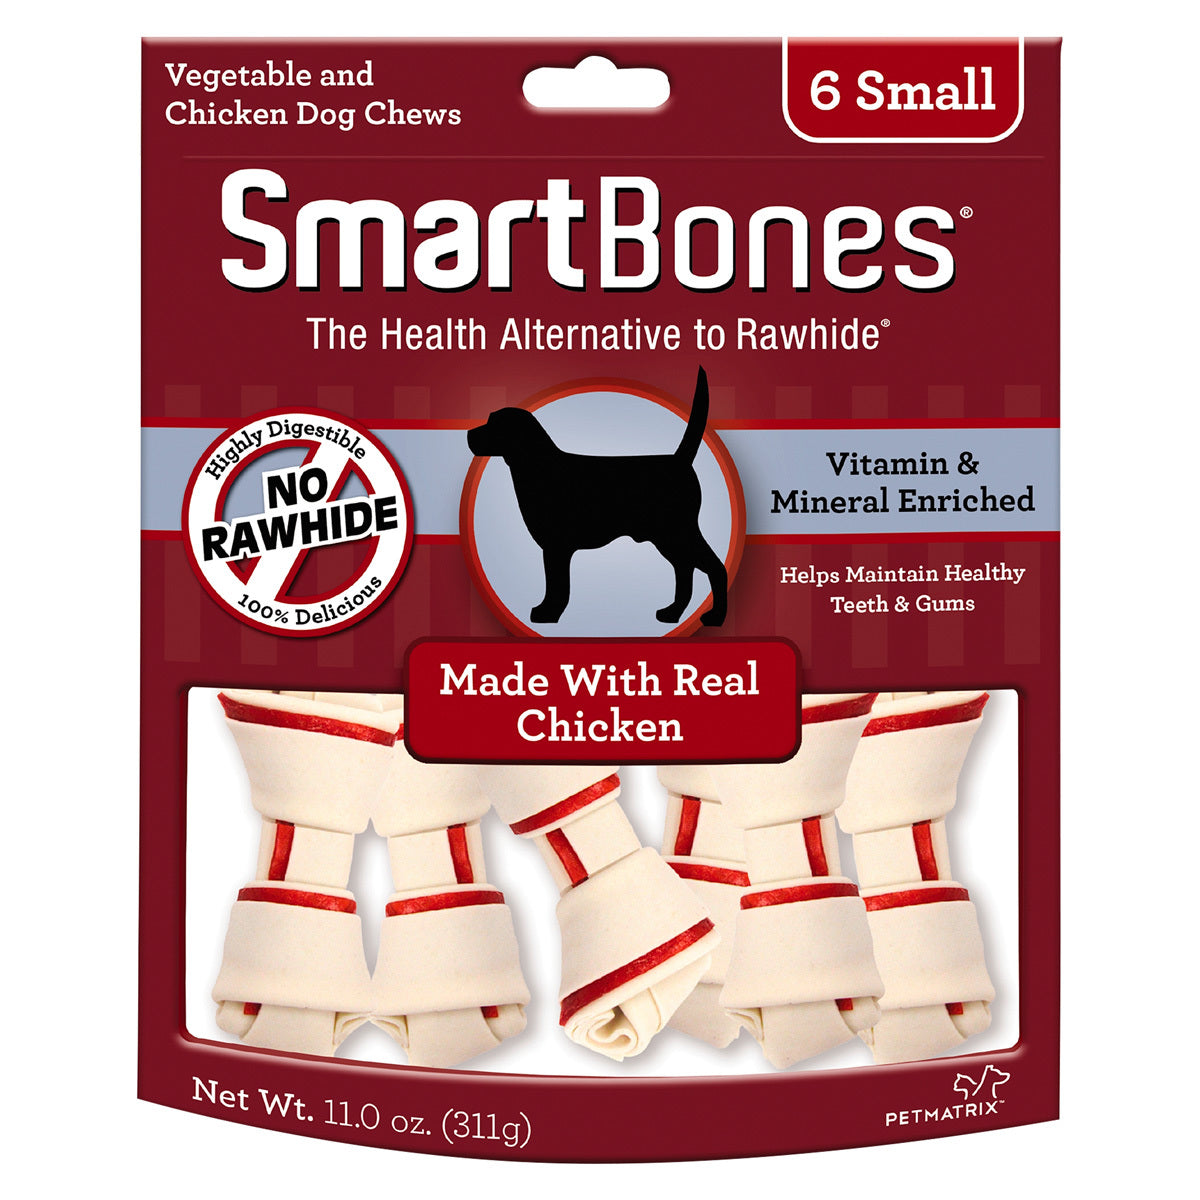 SmartBones Carnaza Vegetal Huesitos Receta Pollo Tamaño Pequeño para Perro 6 Piezas